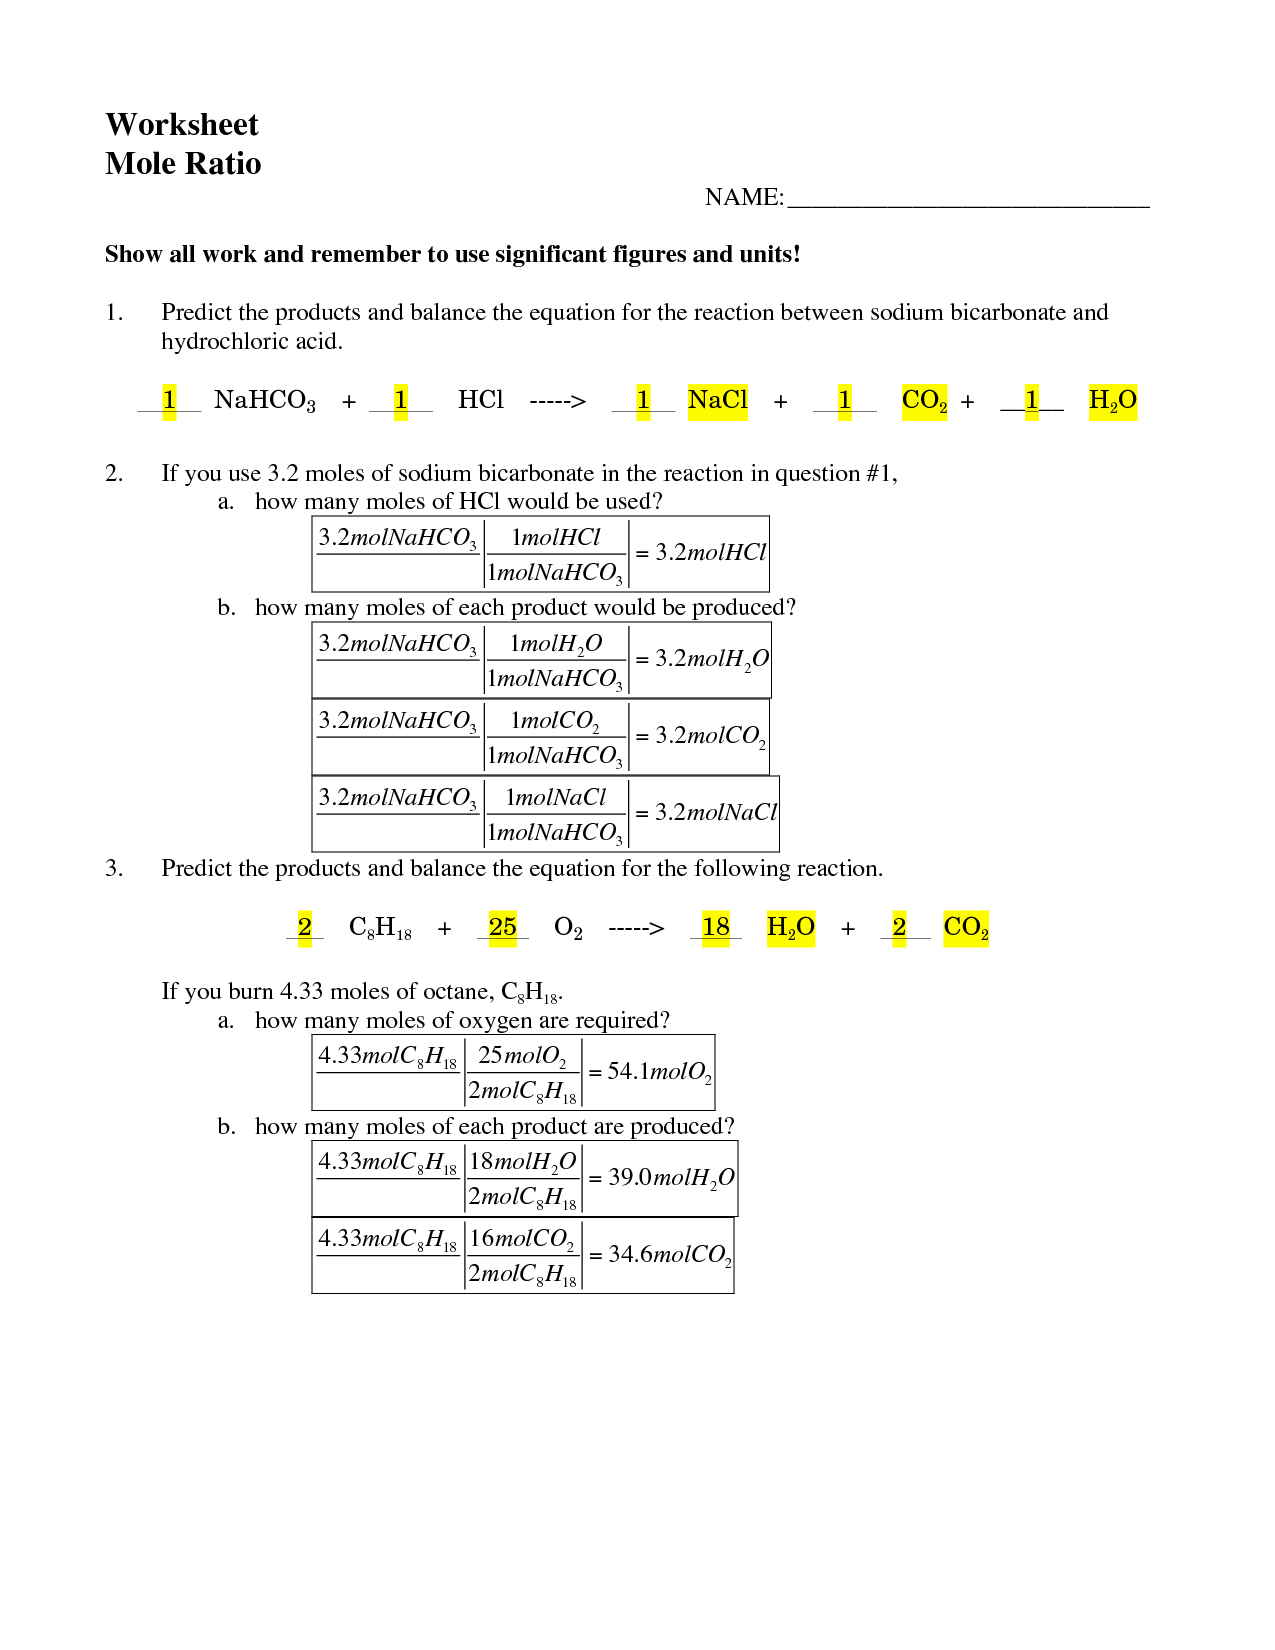 Mole Ratio Worksheet Answer Key Image